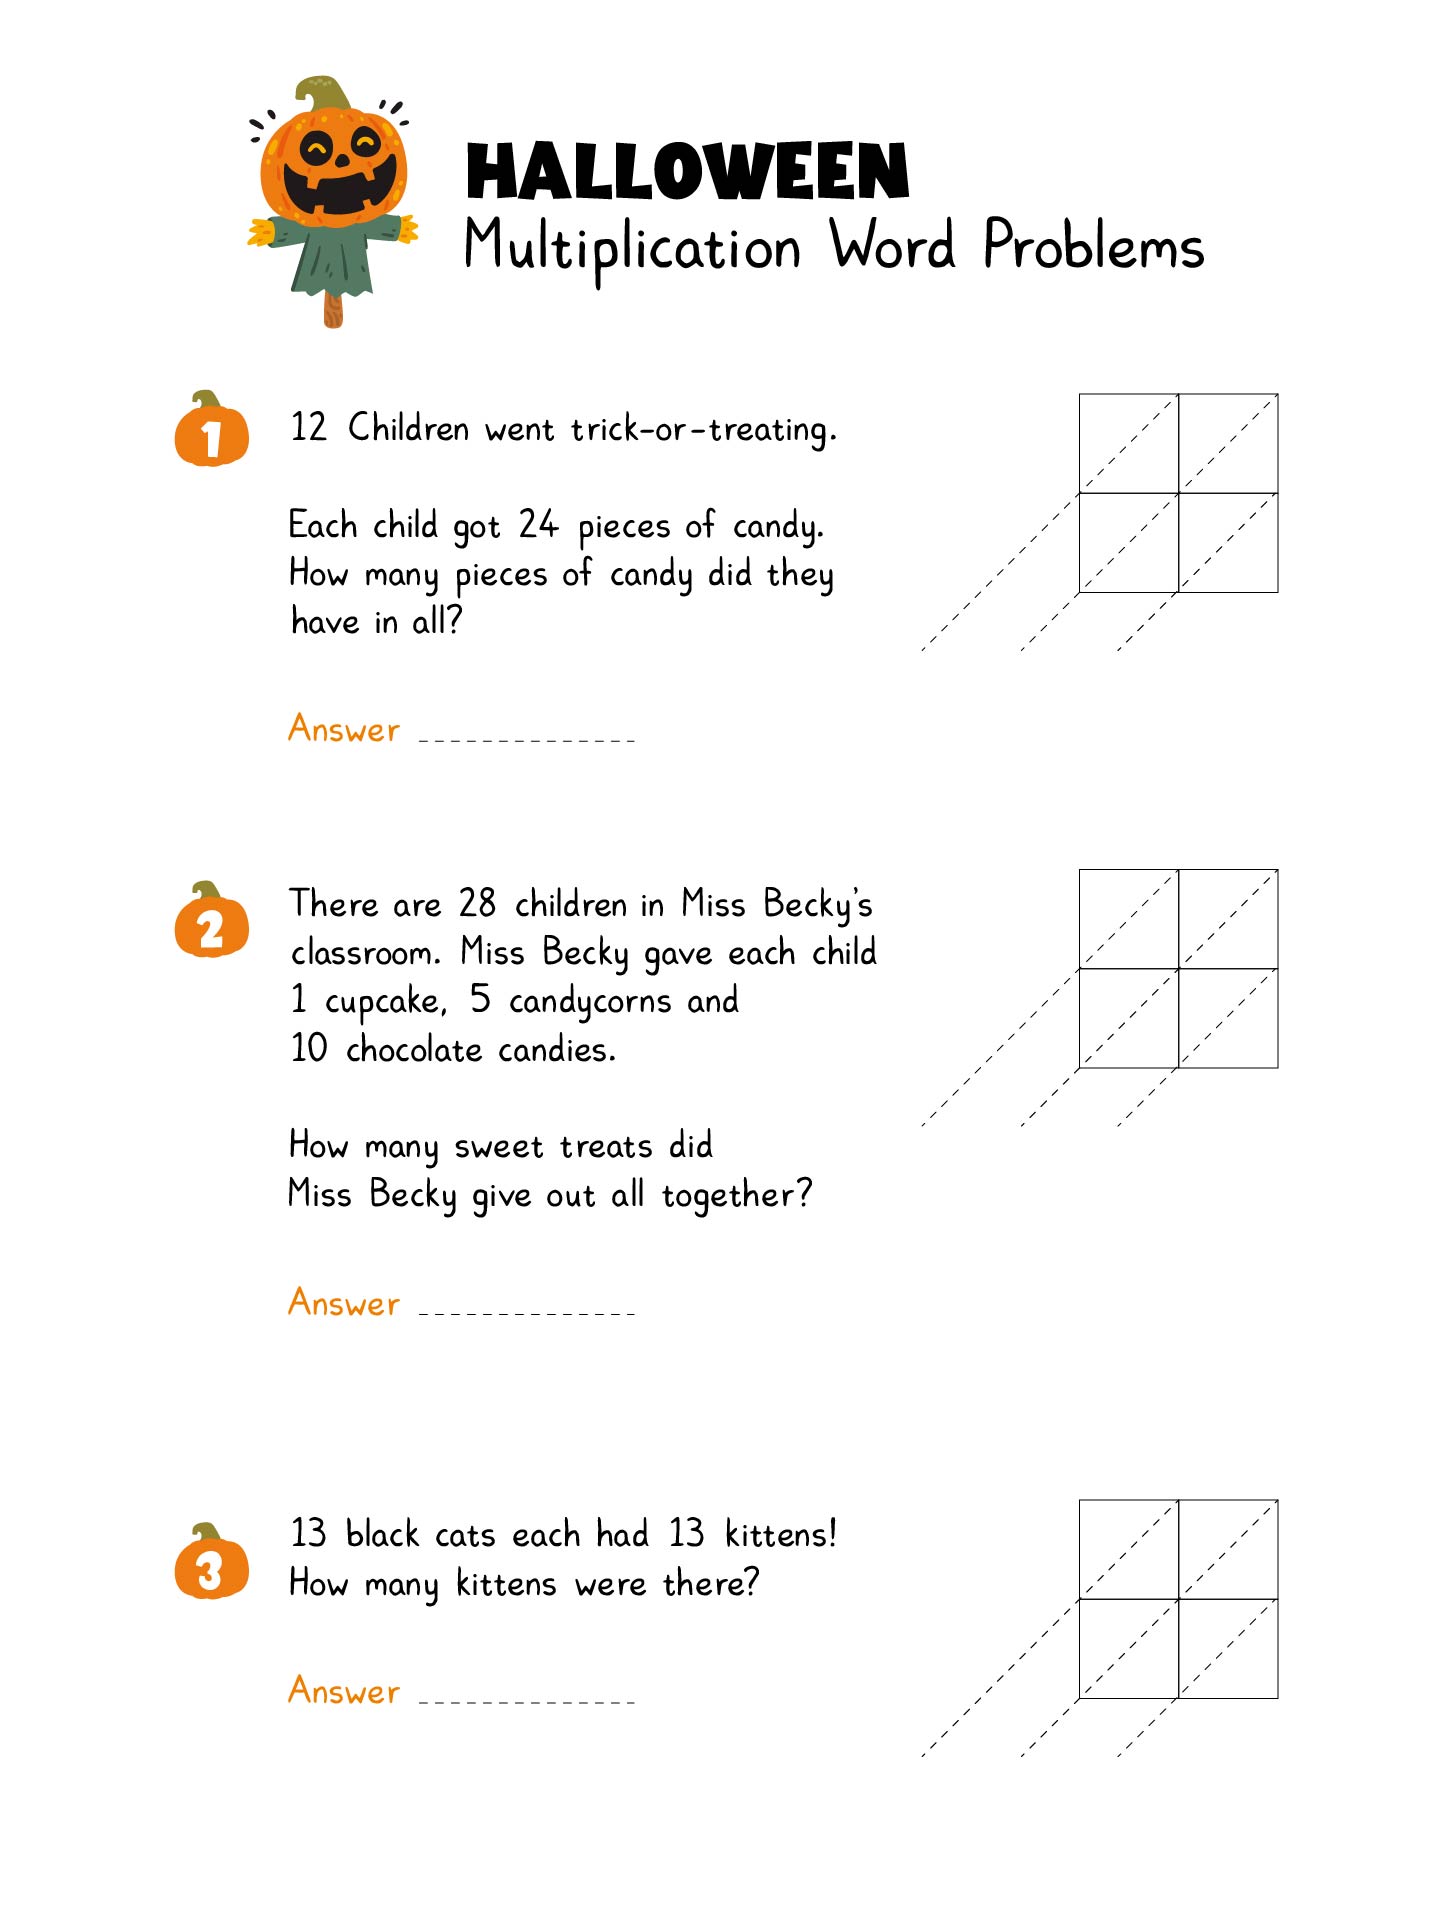 Halloween Multiplication Word Problems Worksheet Printable